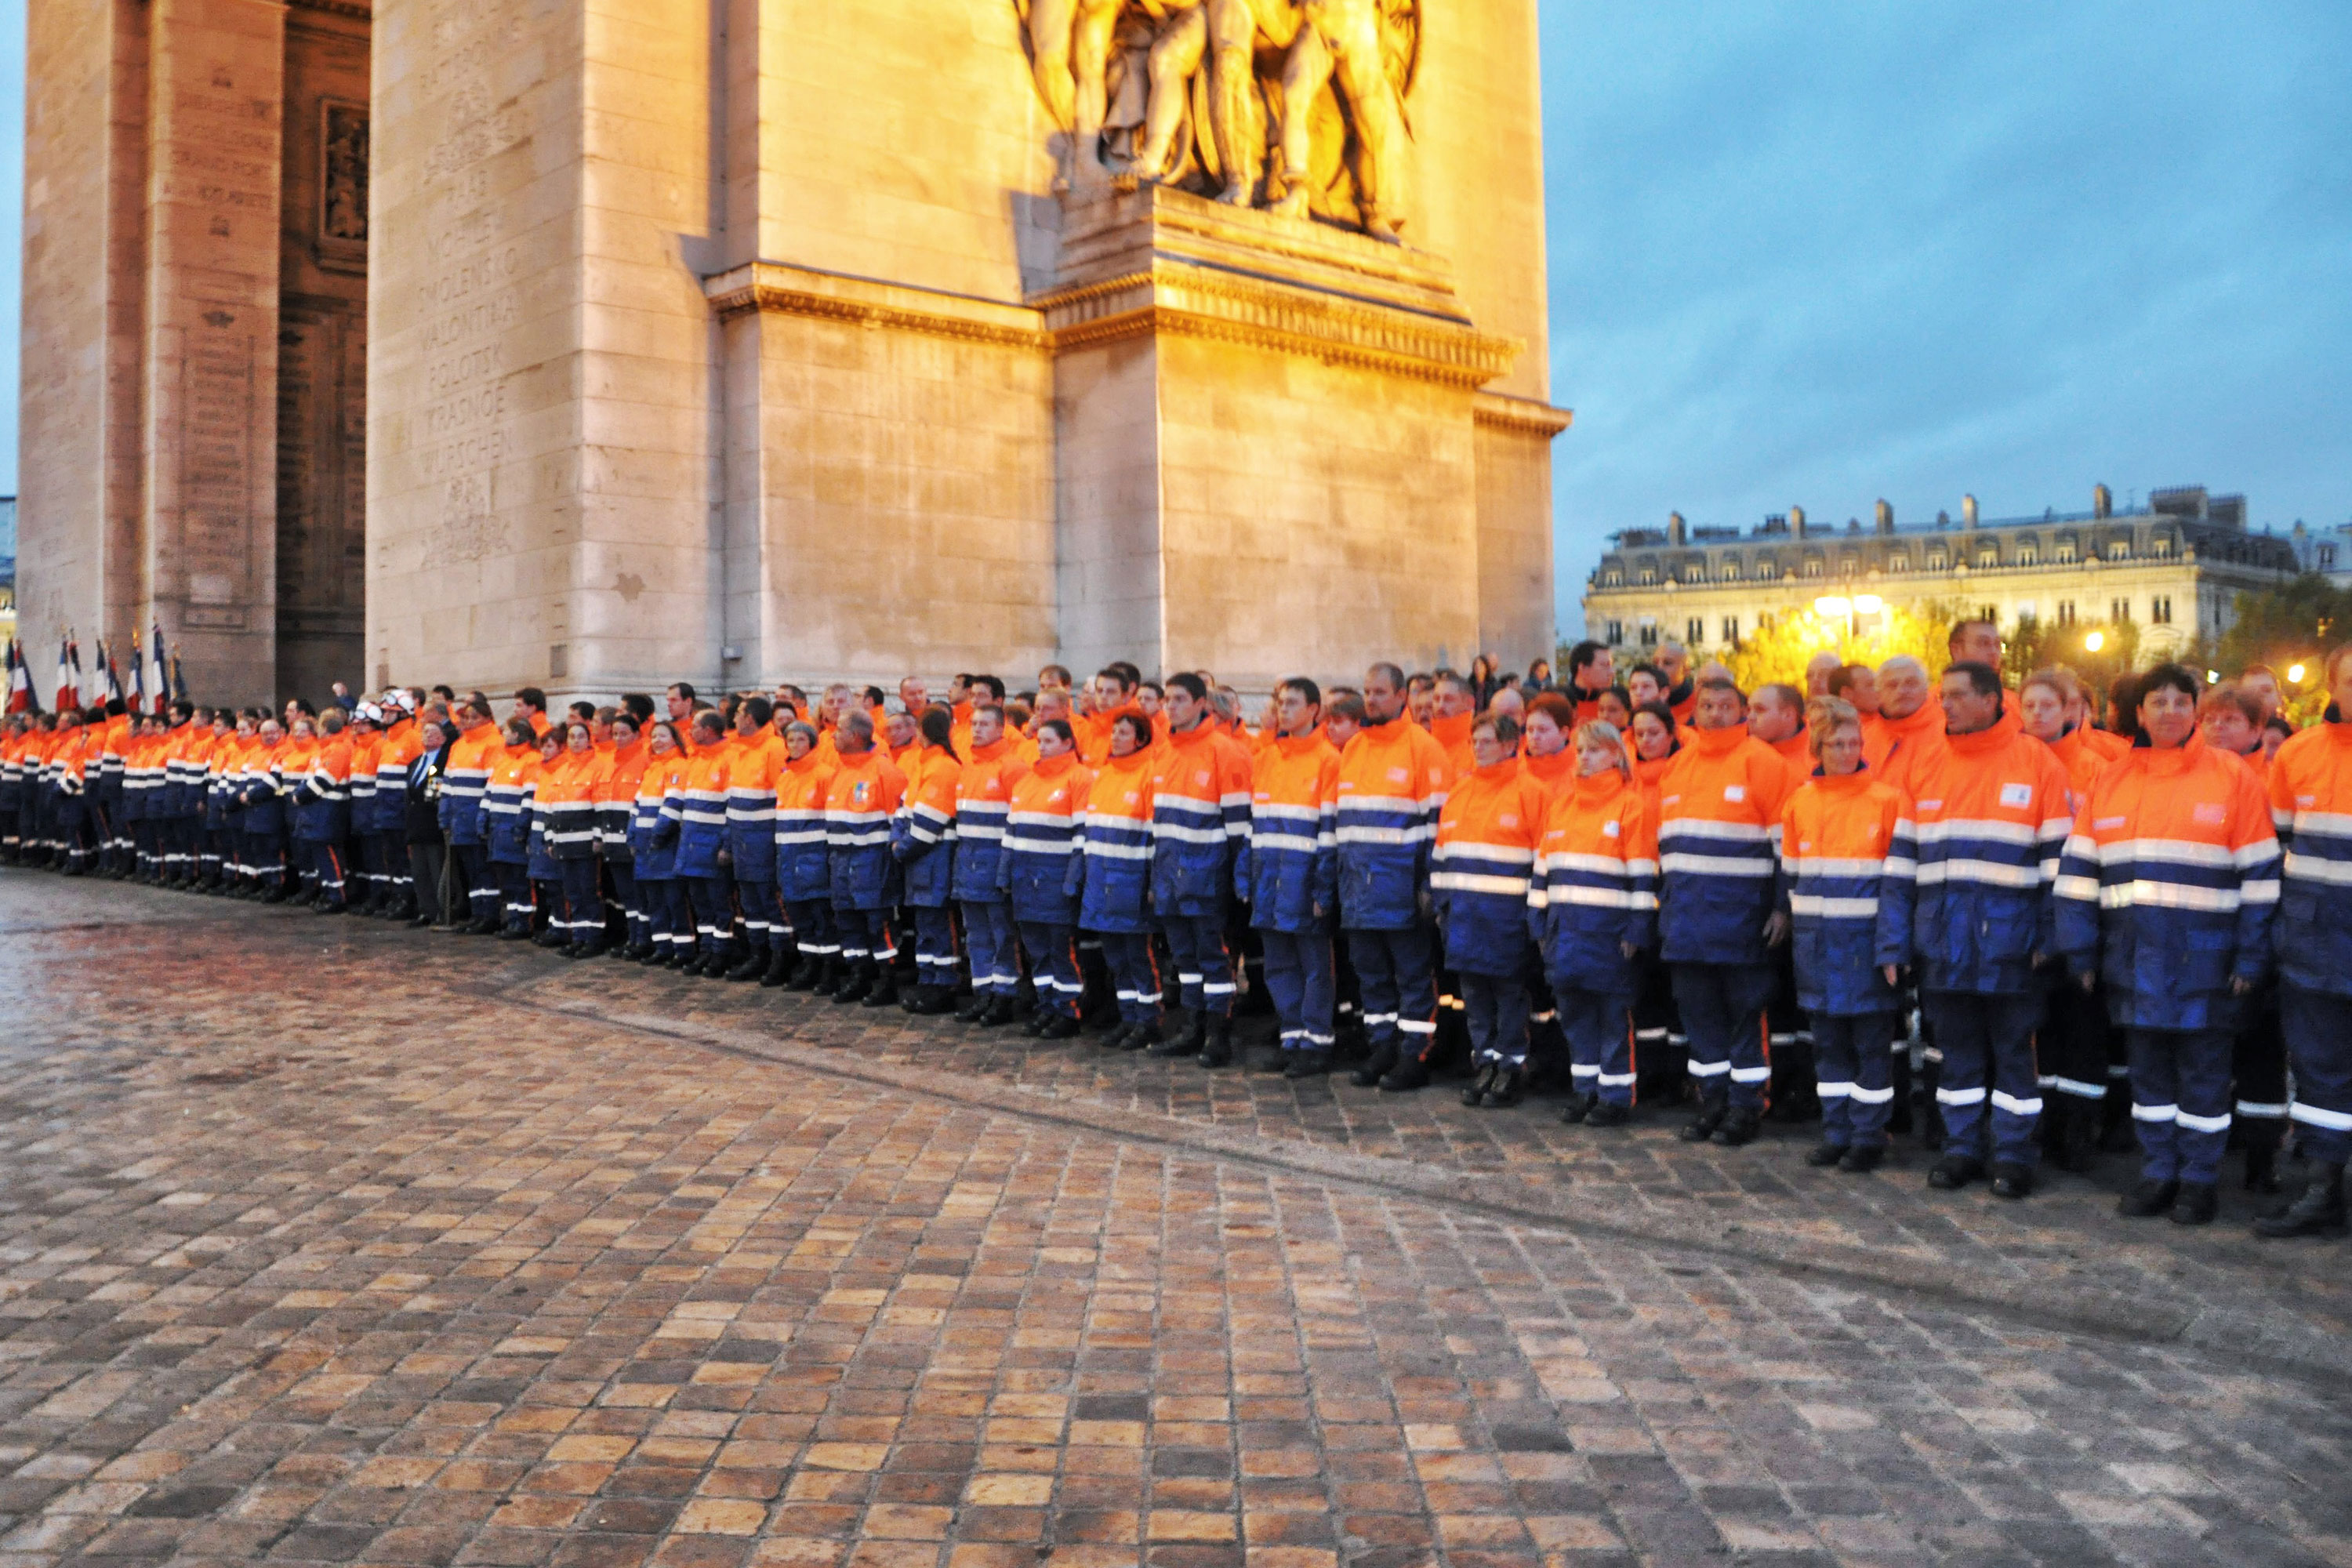 pcps-nos-equipes - Protection Civile Paris Seine